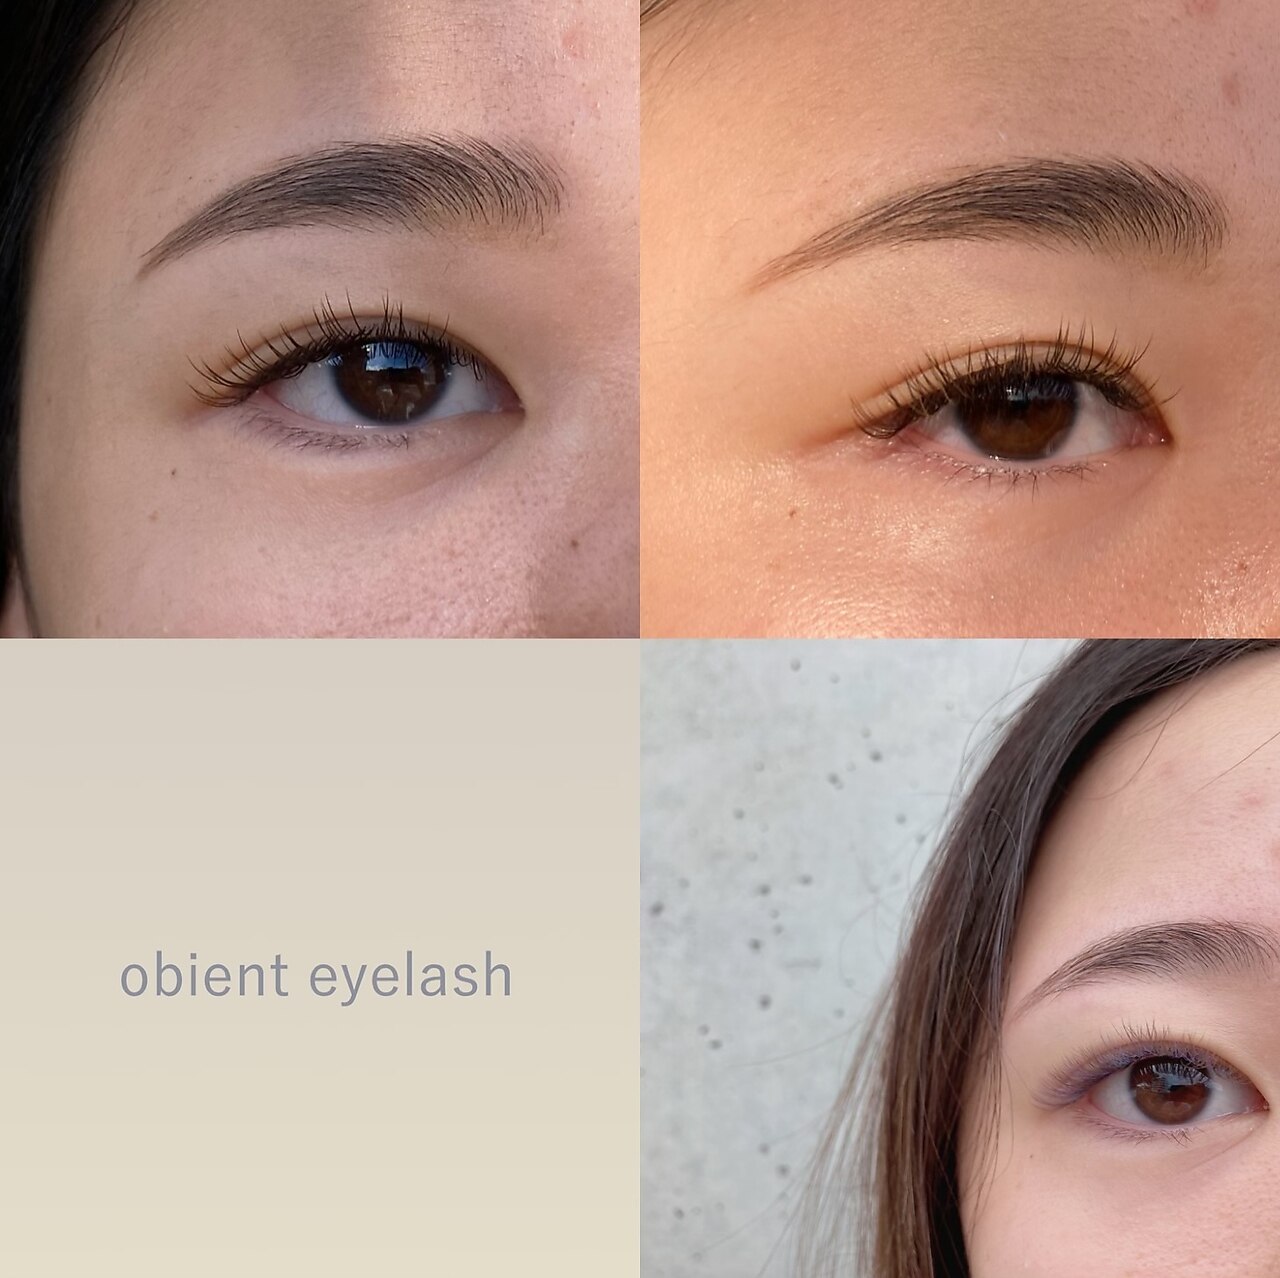 オビエントアイラッシュ(obient eyelash)の紹介画像